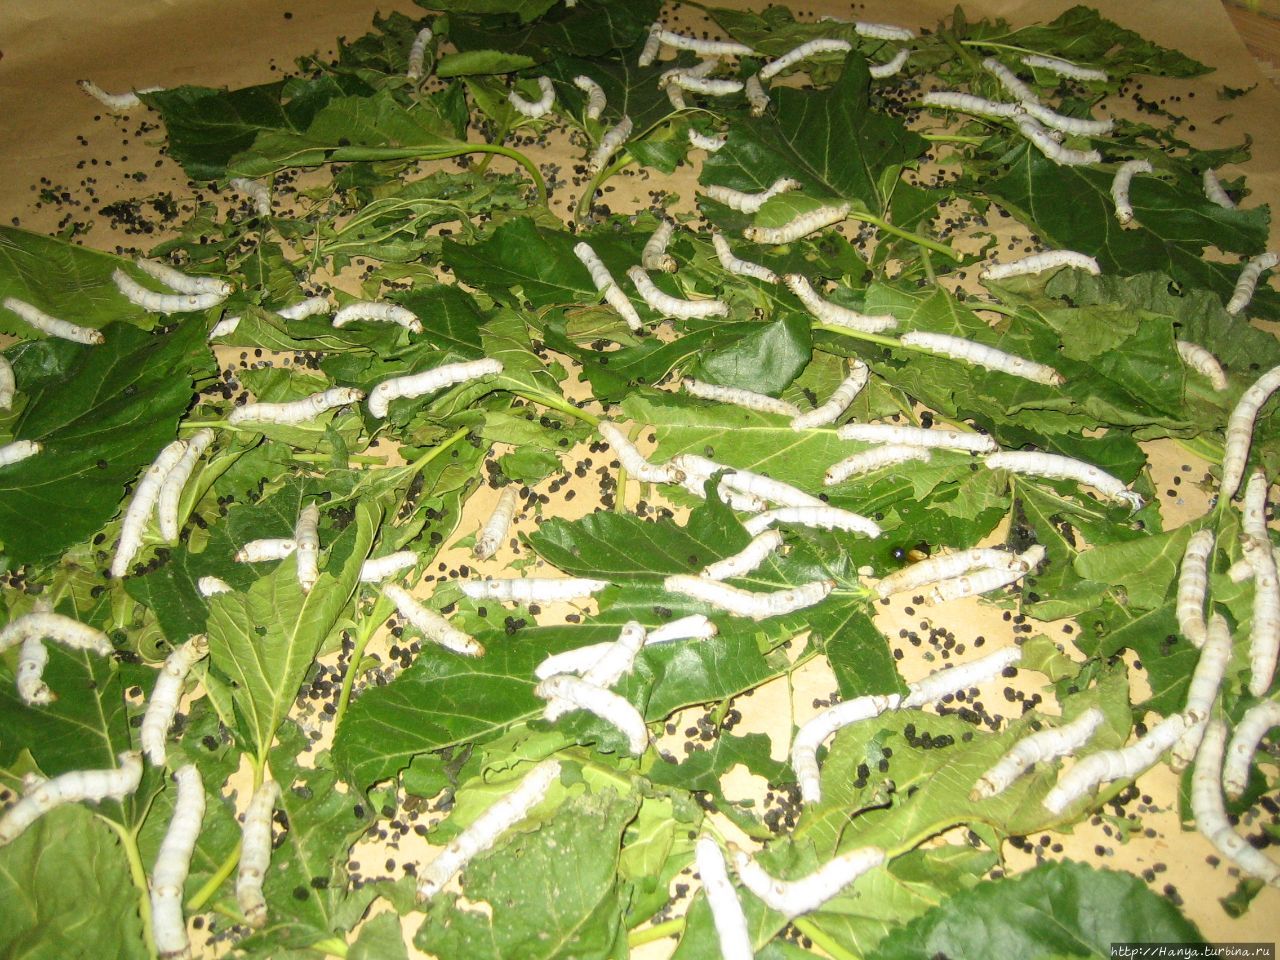 Сучжоу — родина шелкопрядения. Музей шелка.Живые гусеницы “вкушают” листья тутового дерева